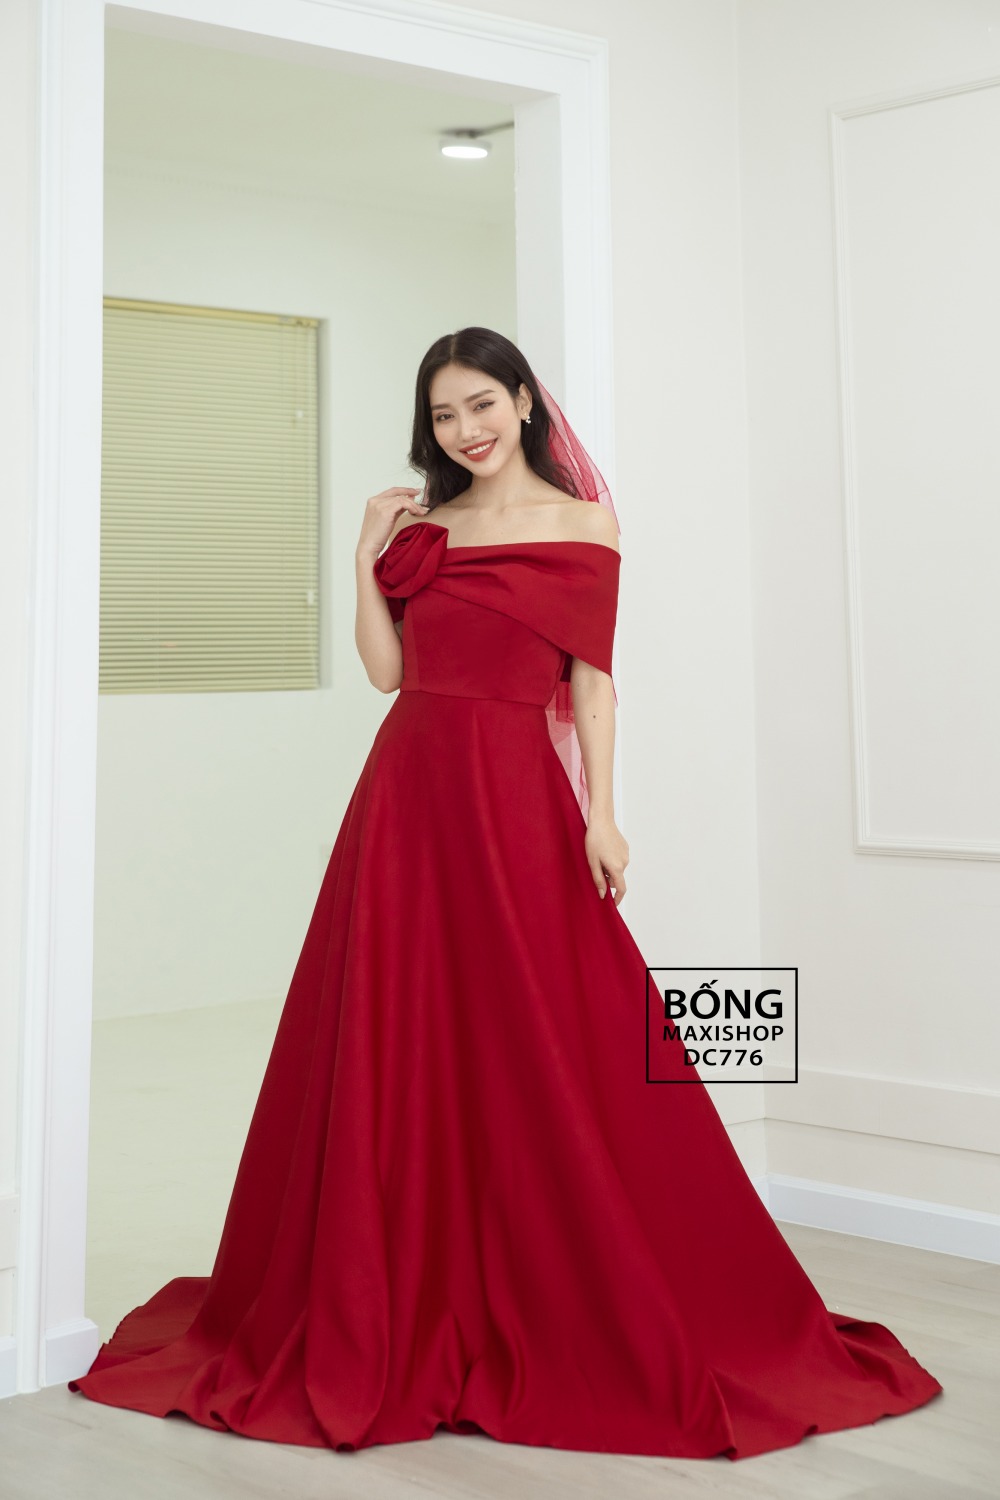 12 Mẫu váy cưới đơn giản sang trọng cho cô dâu nhẹ nhàng